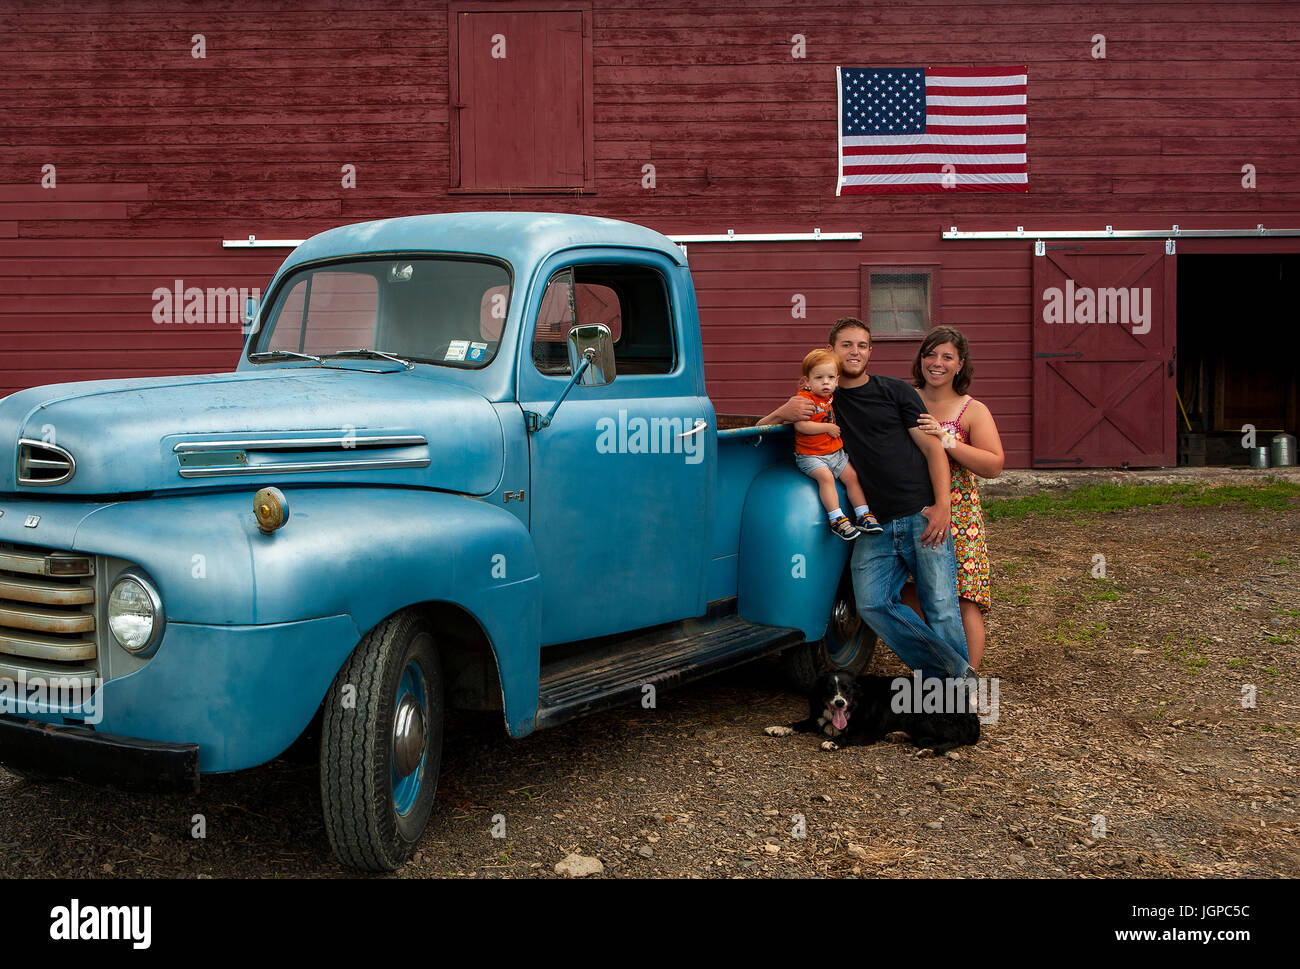 La famille agricole américain avec vintage camion bleu en face de grange rouge avec le drapeau américain, le chien au pied, red headed toddler Banque D'Images